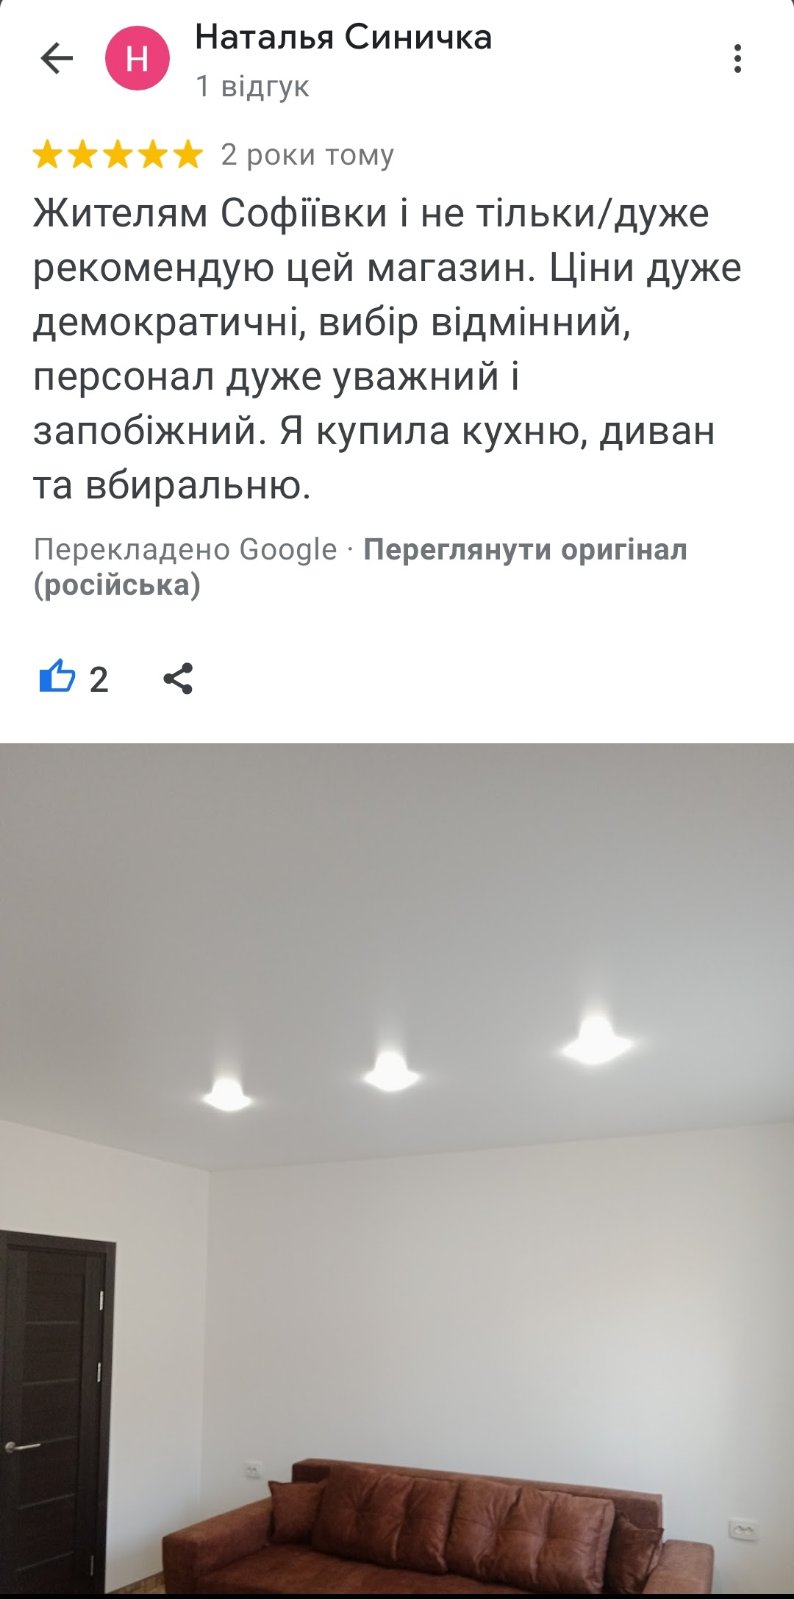 Відгук Google про магазин меблів Meblimir. Жителям Софіївки і не тільки/дуже рекомендую цей магазин. Ціни дуже демократичні, вибір відмінний, персонал дуже уважний і запобіжний. Я купила кухню, диван та вбиральню.